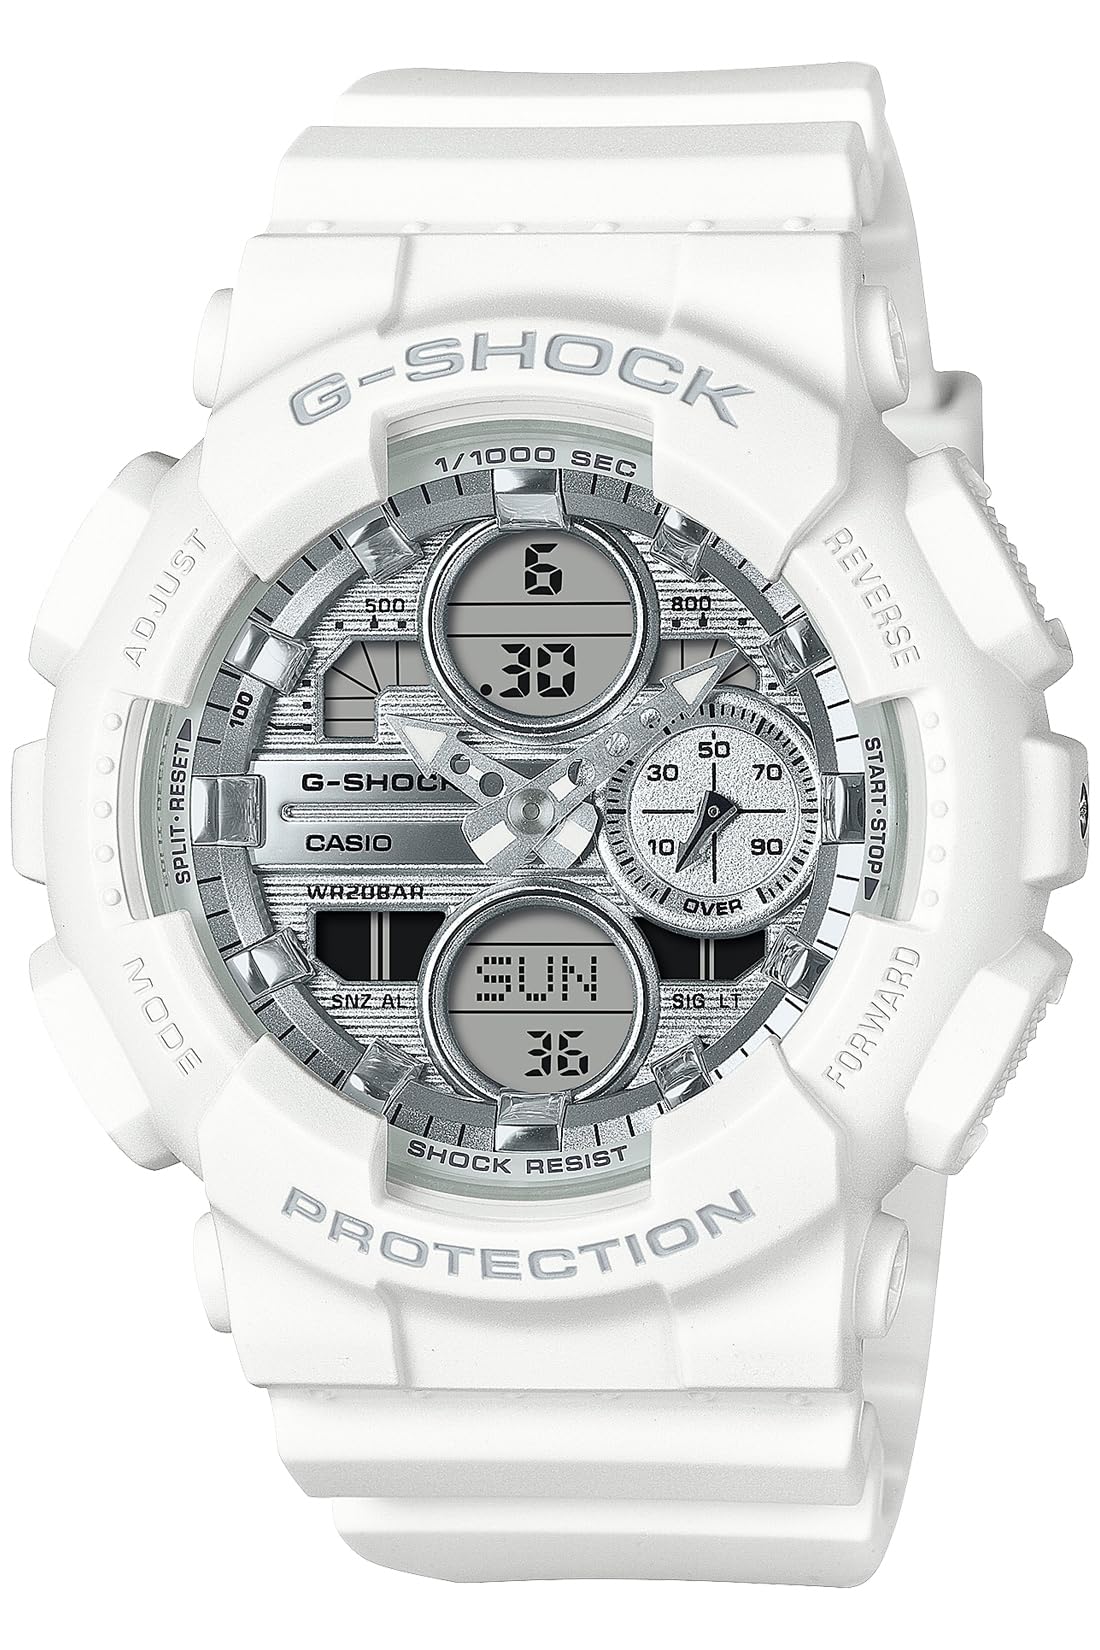 ジーショック [カシオ] 腕時計 【国内正規品】バイオマスプラスチック採用 GMA-S140VA-7AJF レディース ホワイト - BanzaiHobby